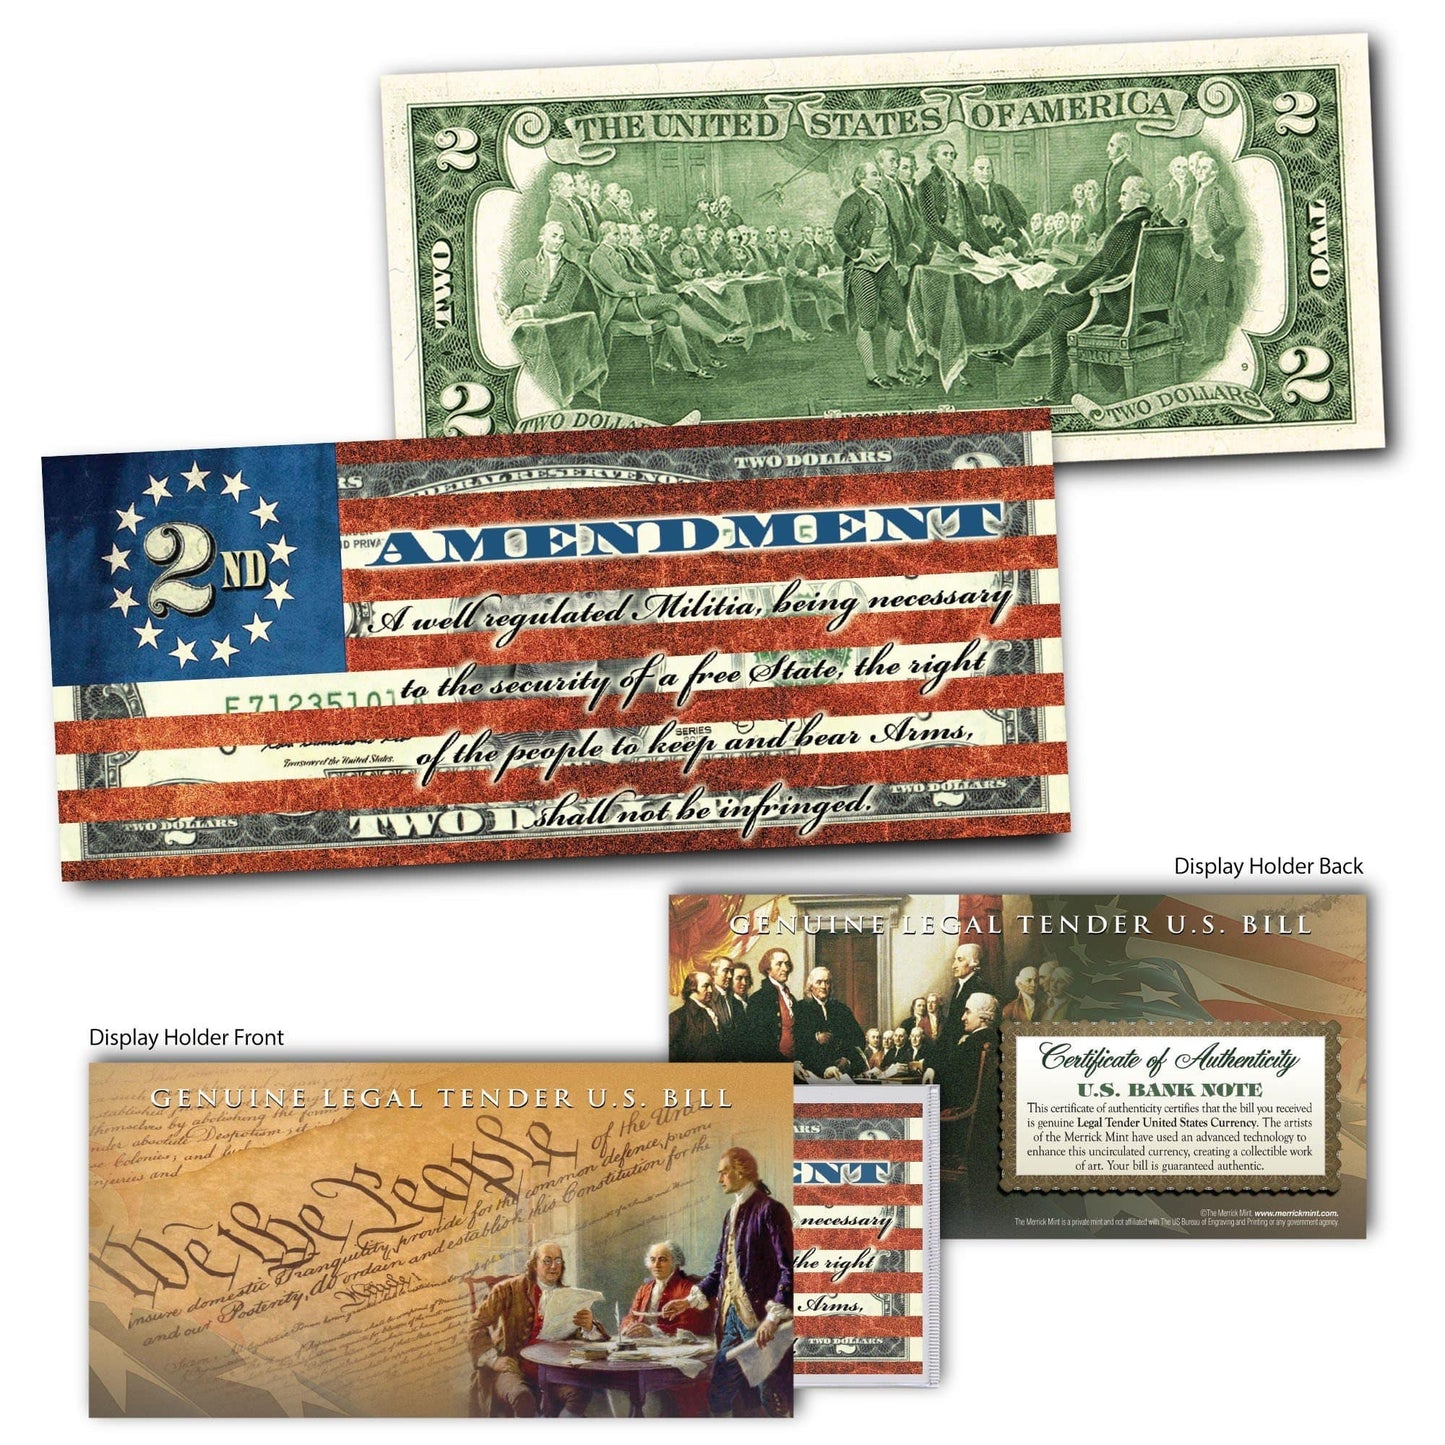 "2nd Amendment" (Flag) - Genuine Legal Tender U.S. $2 Bill - Proud Patriots